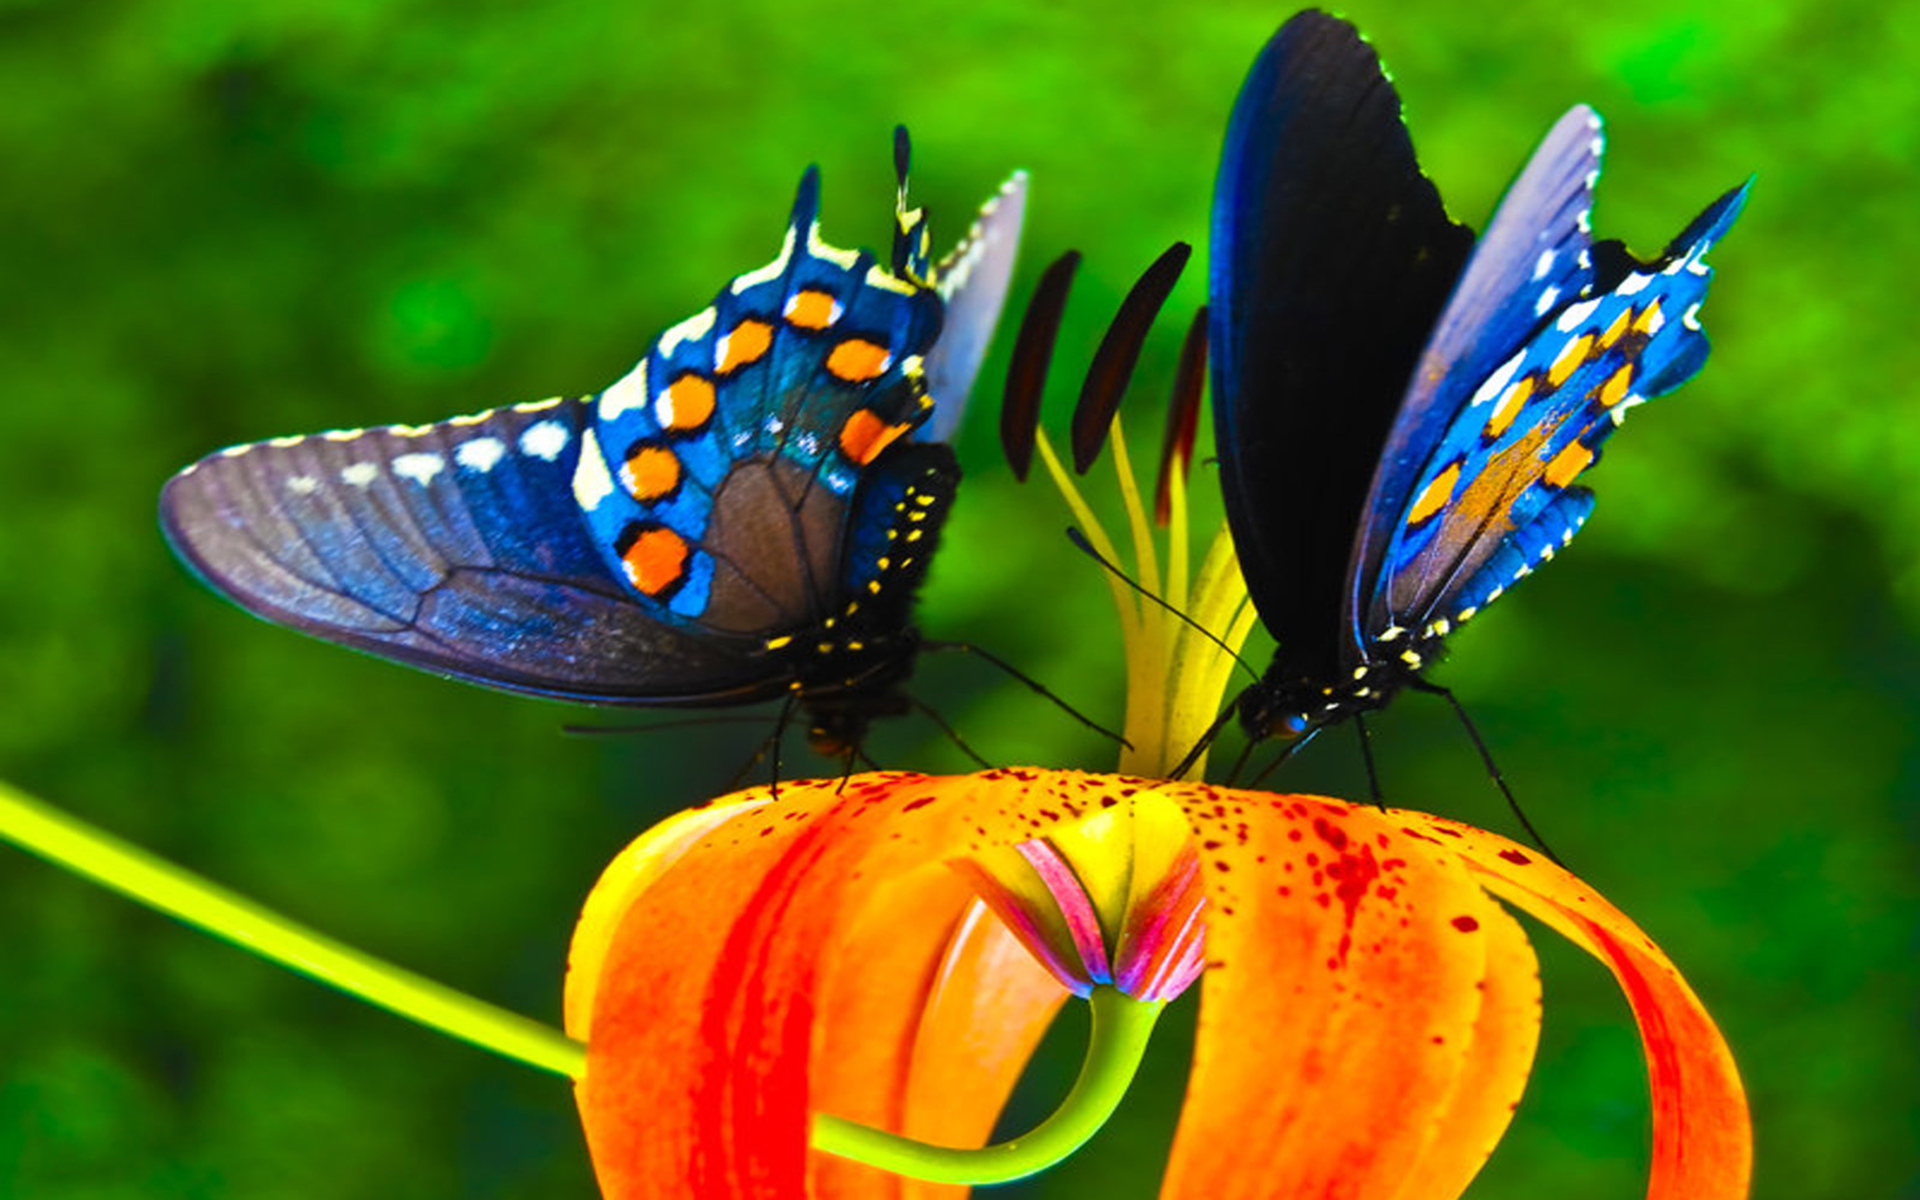 Скачать обои бесплатно Животные, Цветок, Цвета, Бабочка, Красочный картинка на рабочий стол ПК